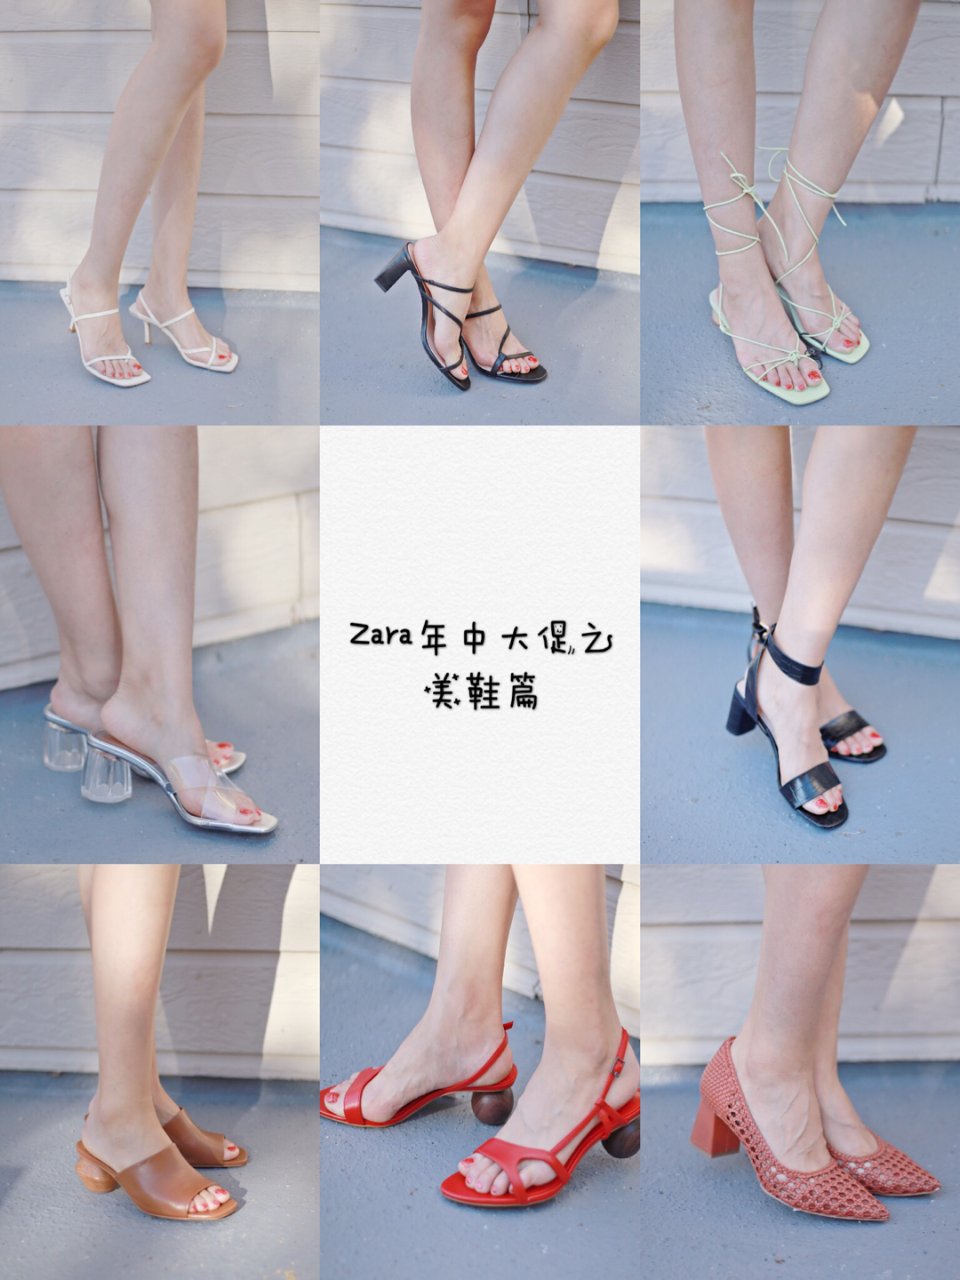 Zara,Zara一生推,zara大法好,zara买的鞋